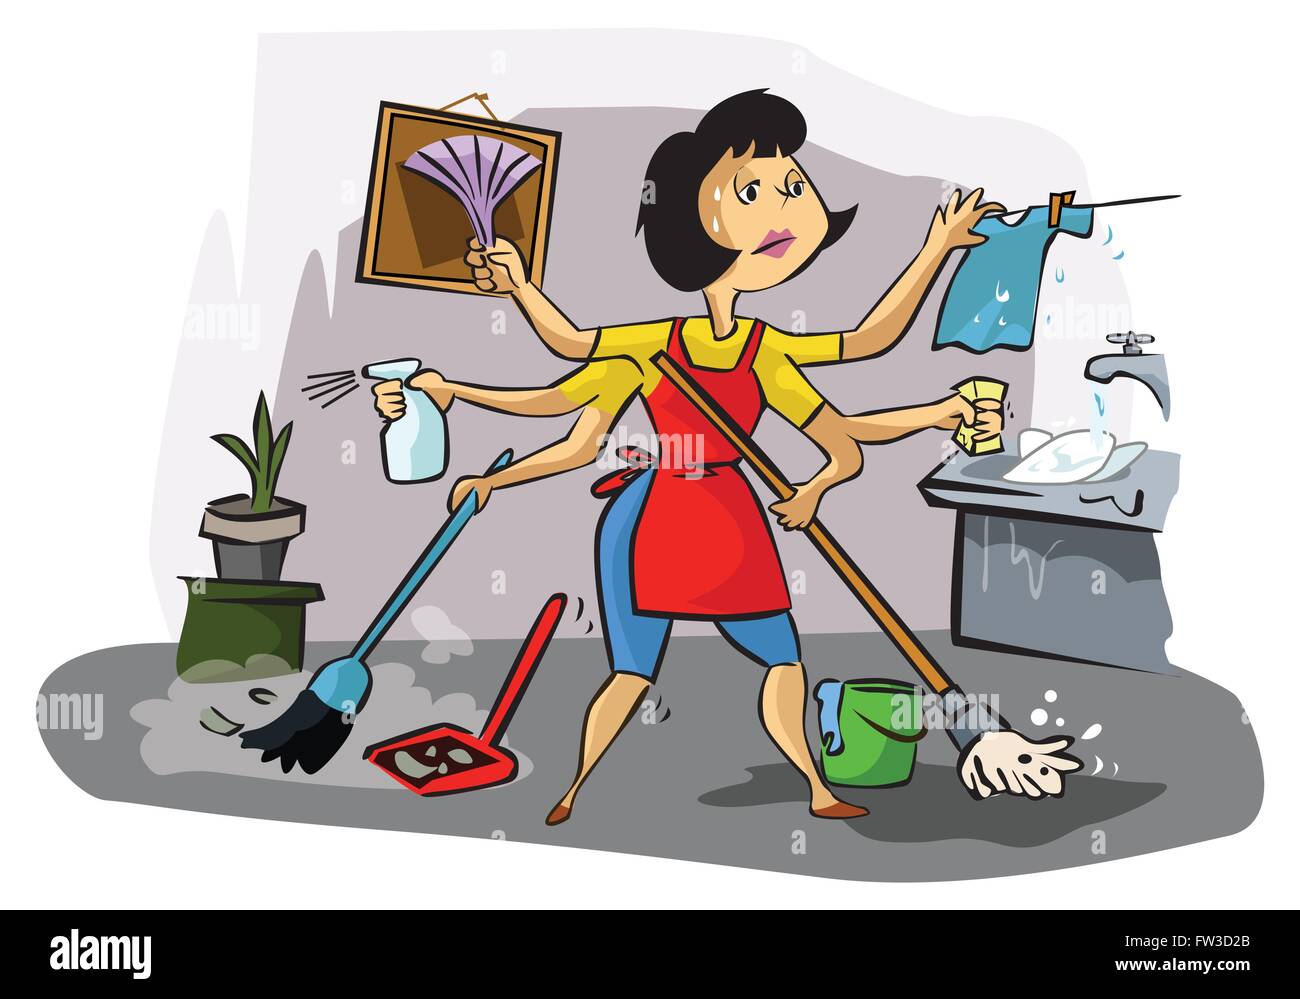 Наташа помогала матери по хозяйству. Стирка уборка готовка. Домохозяйка иллюстрация. Женщина уборка. Женщина вся в домашних делах.